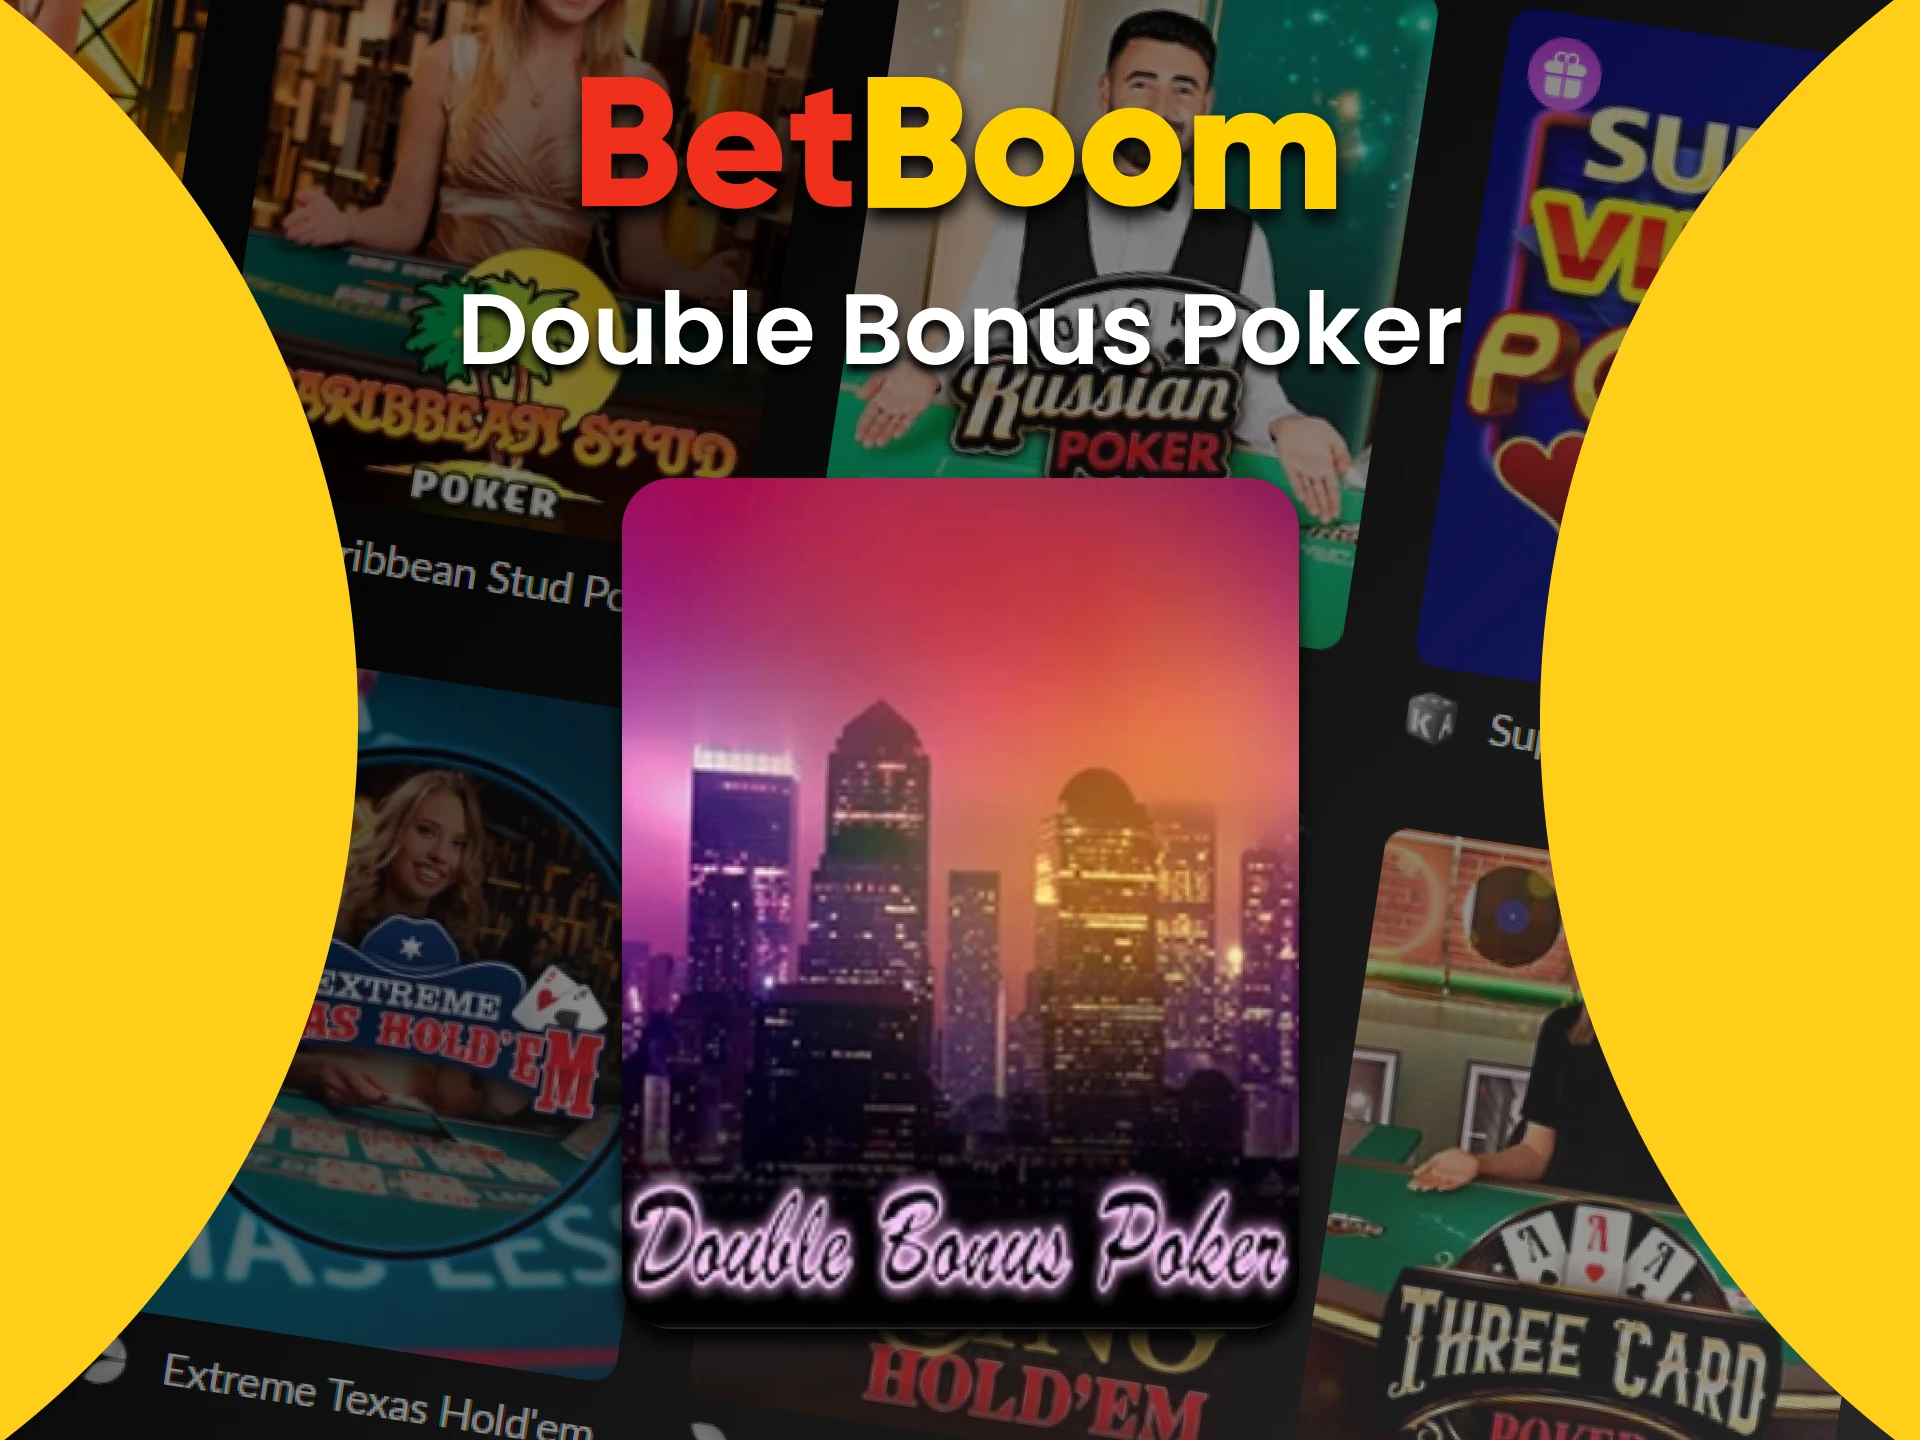 Jogue Double Bonus Poker no cassino do BetBoom.